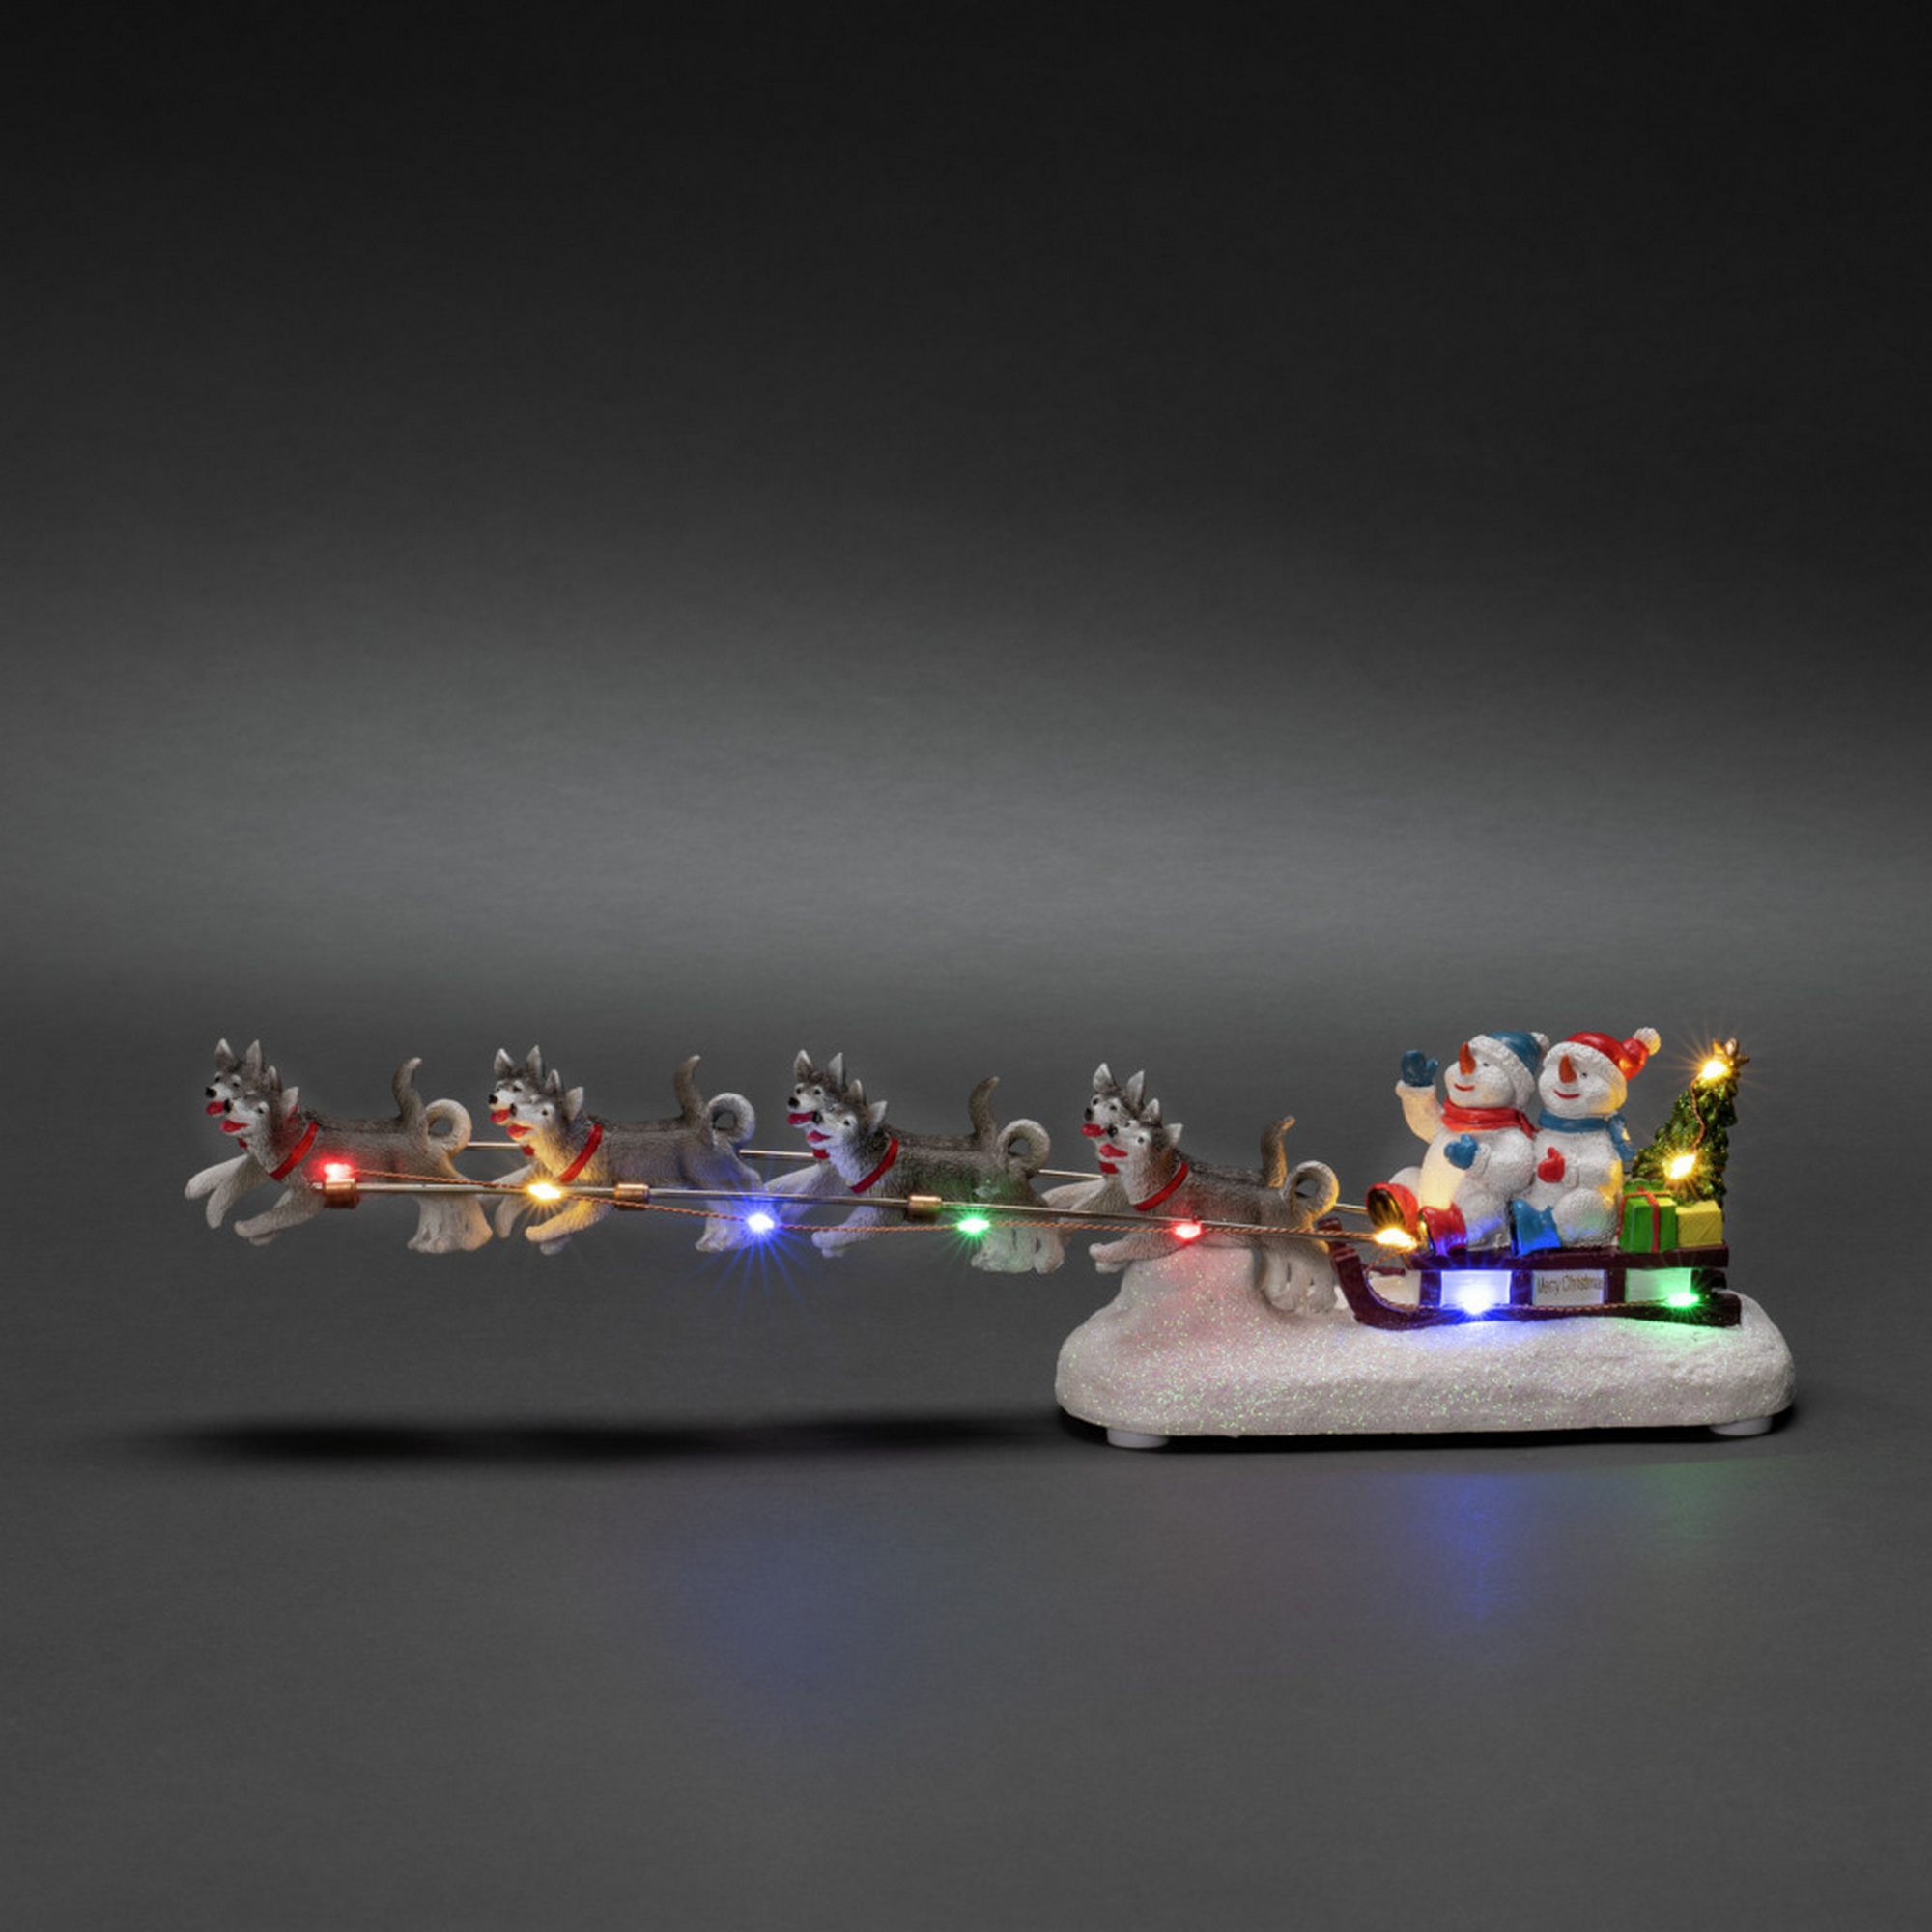 LED-Szenerie 'Schneemann mit Hundeschlitten' 10 LEDs bunt 41 x 10 cm + product picture